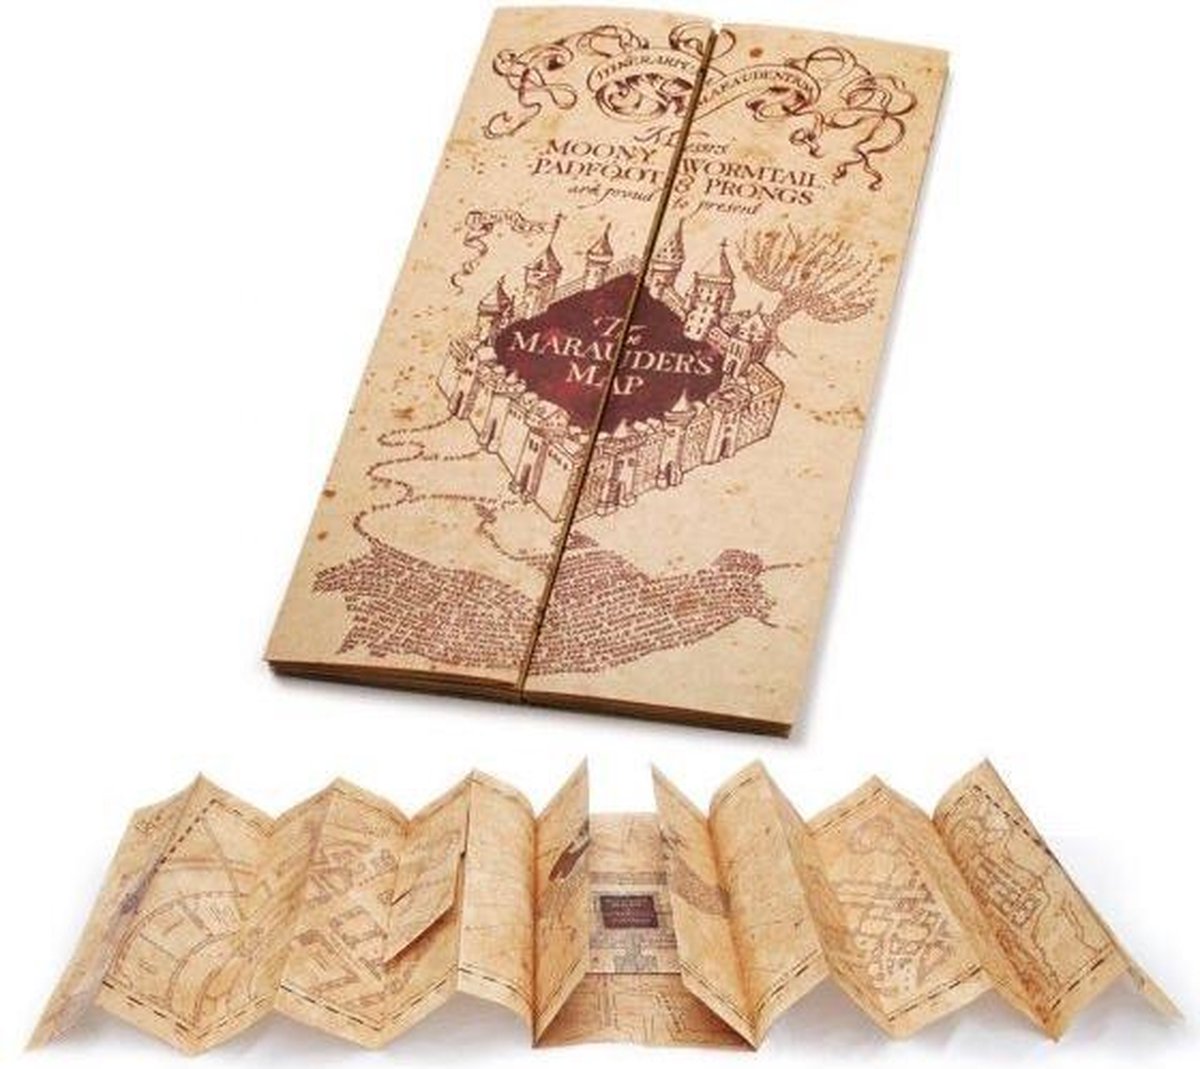 Pols horloge Harry Potter - Marauder‘s Map | Kleding en accessoires voor  fans van merchandise